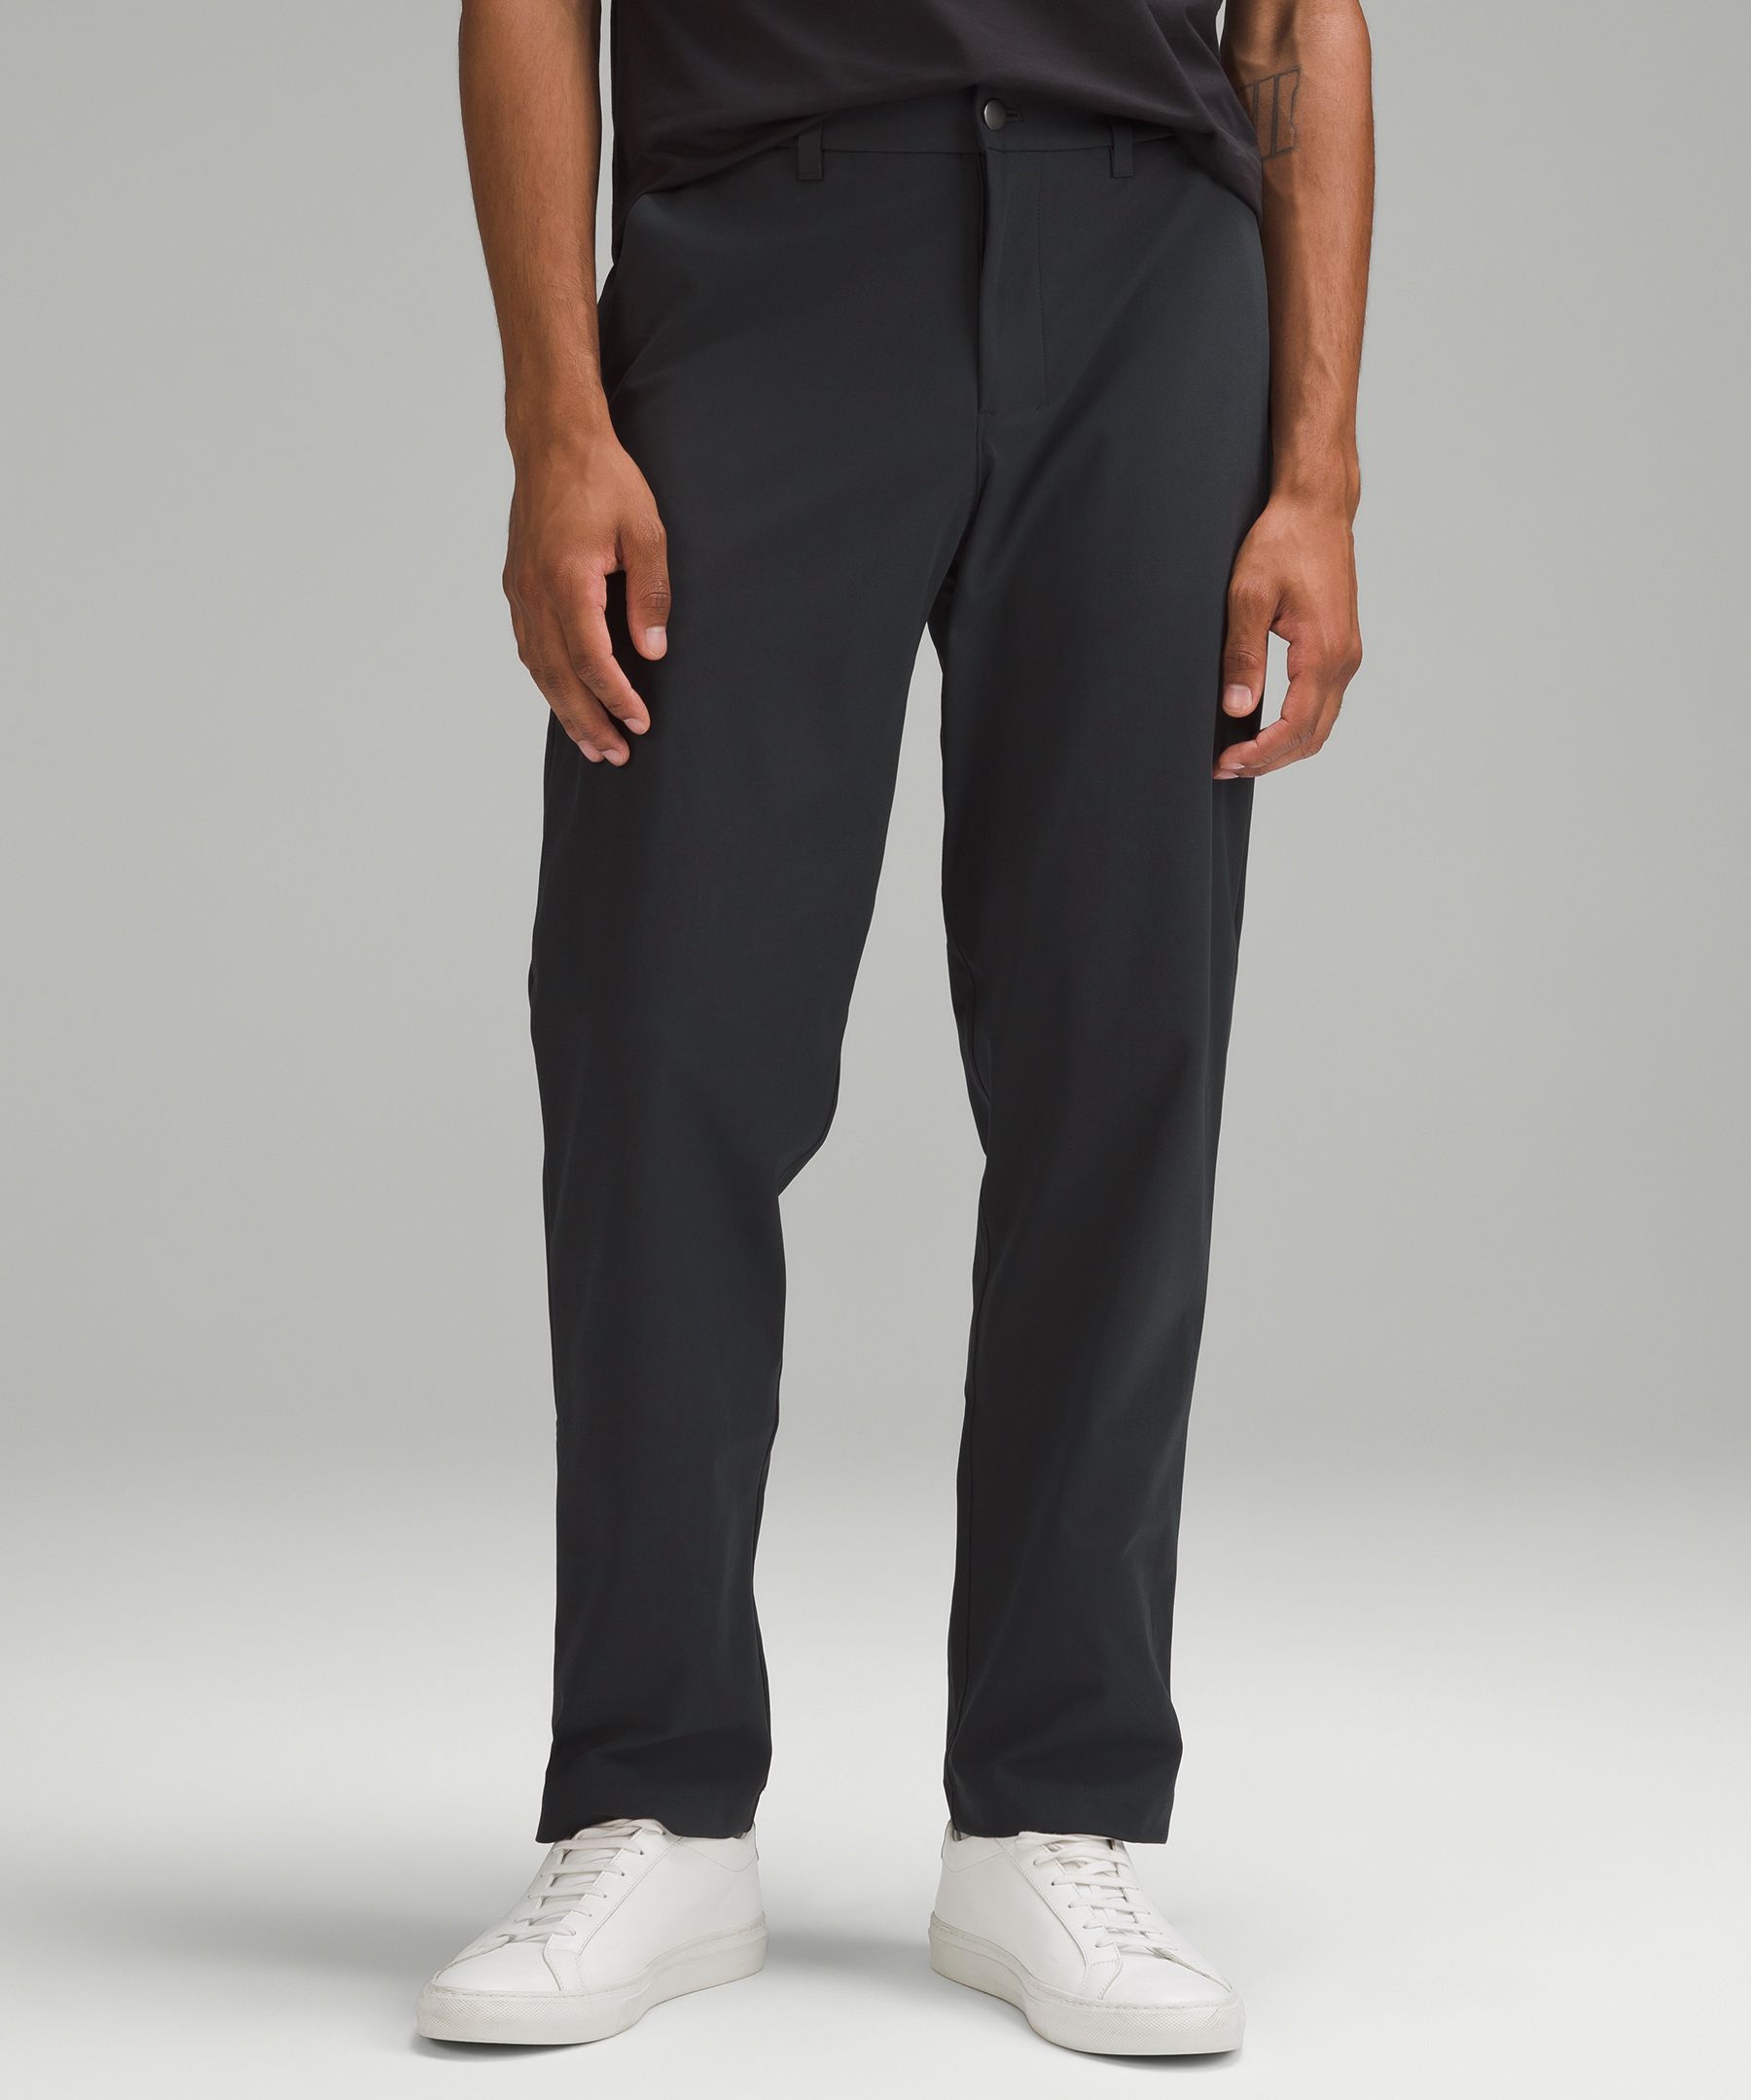 Lululemon Men's Pants Trousers Snap Button Ankle Zipper Size 34 READ